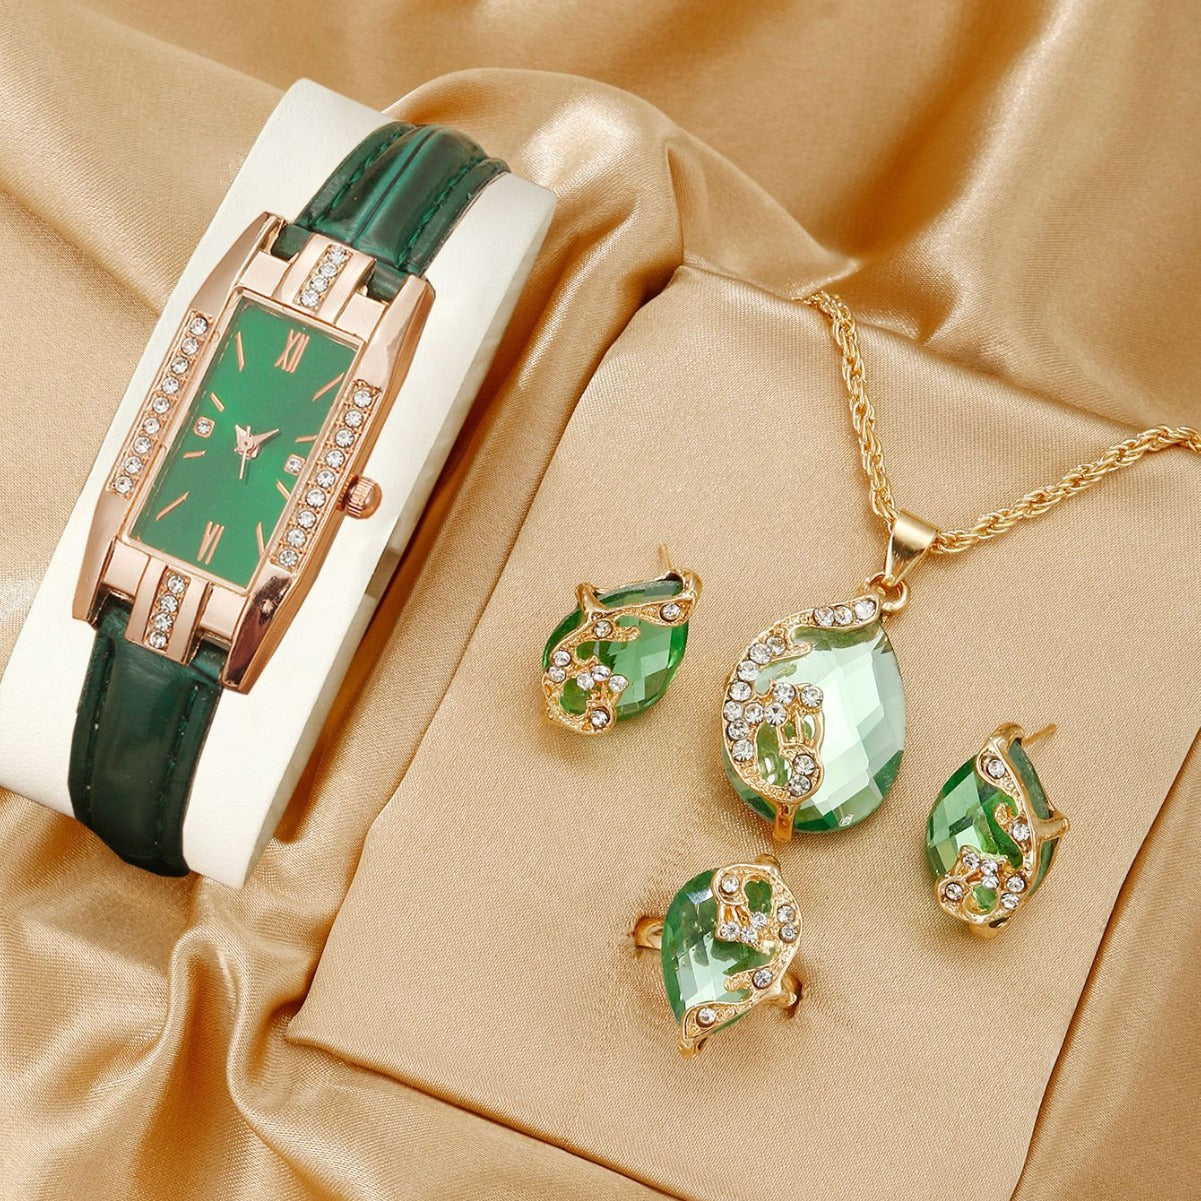 Women's quartz watch with leather strap - jewelry three-piece set